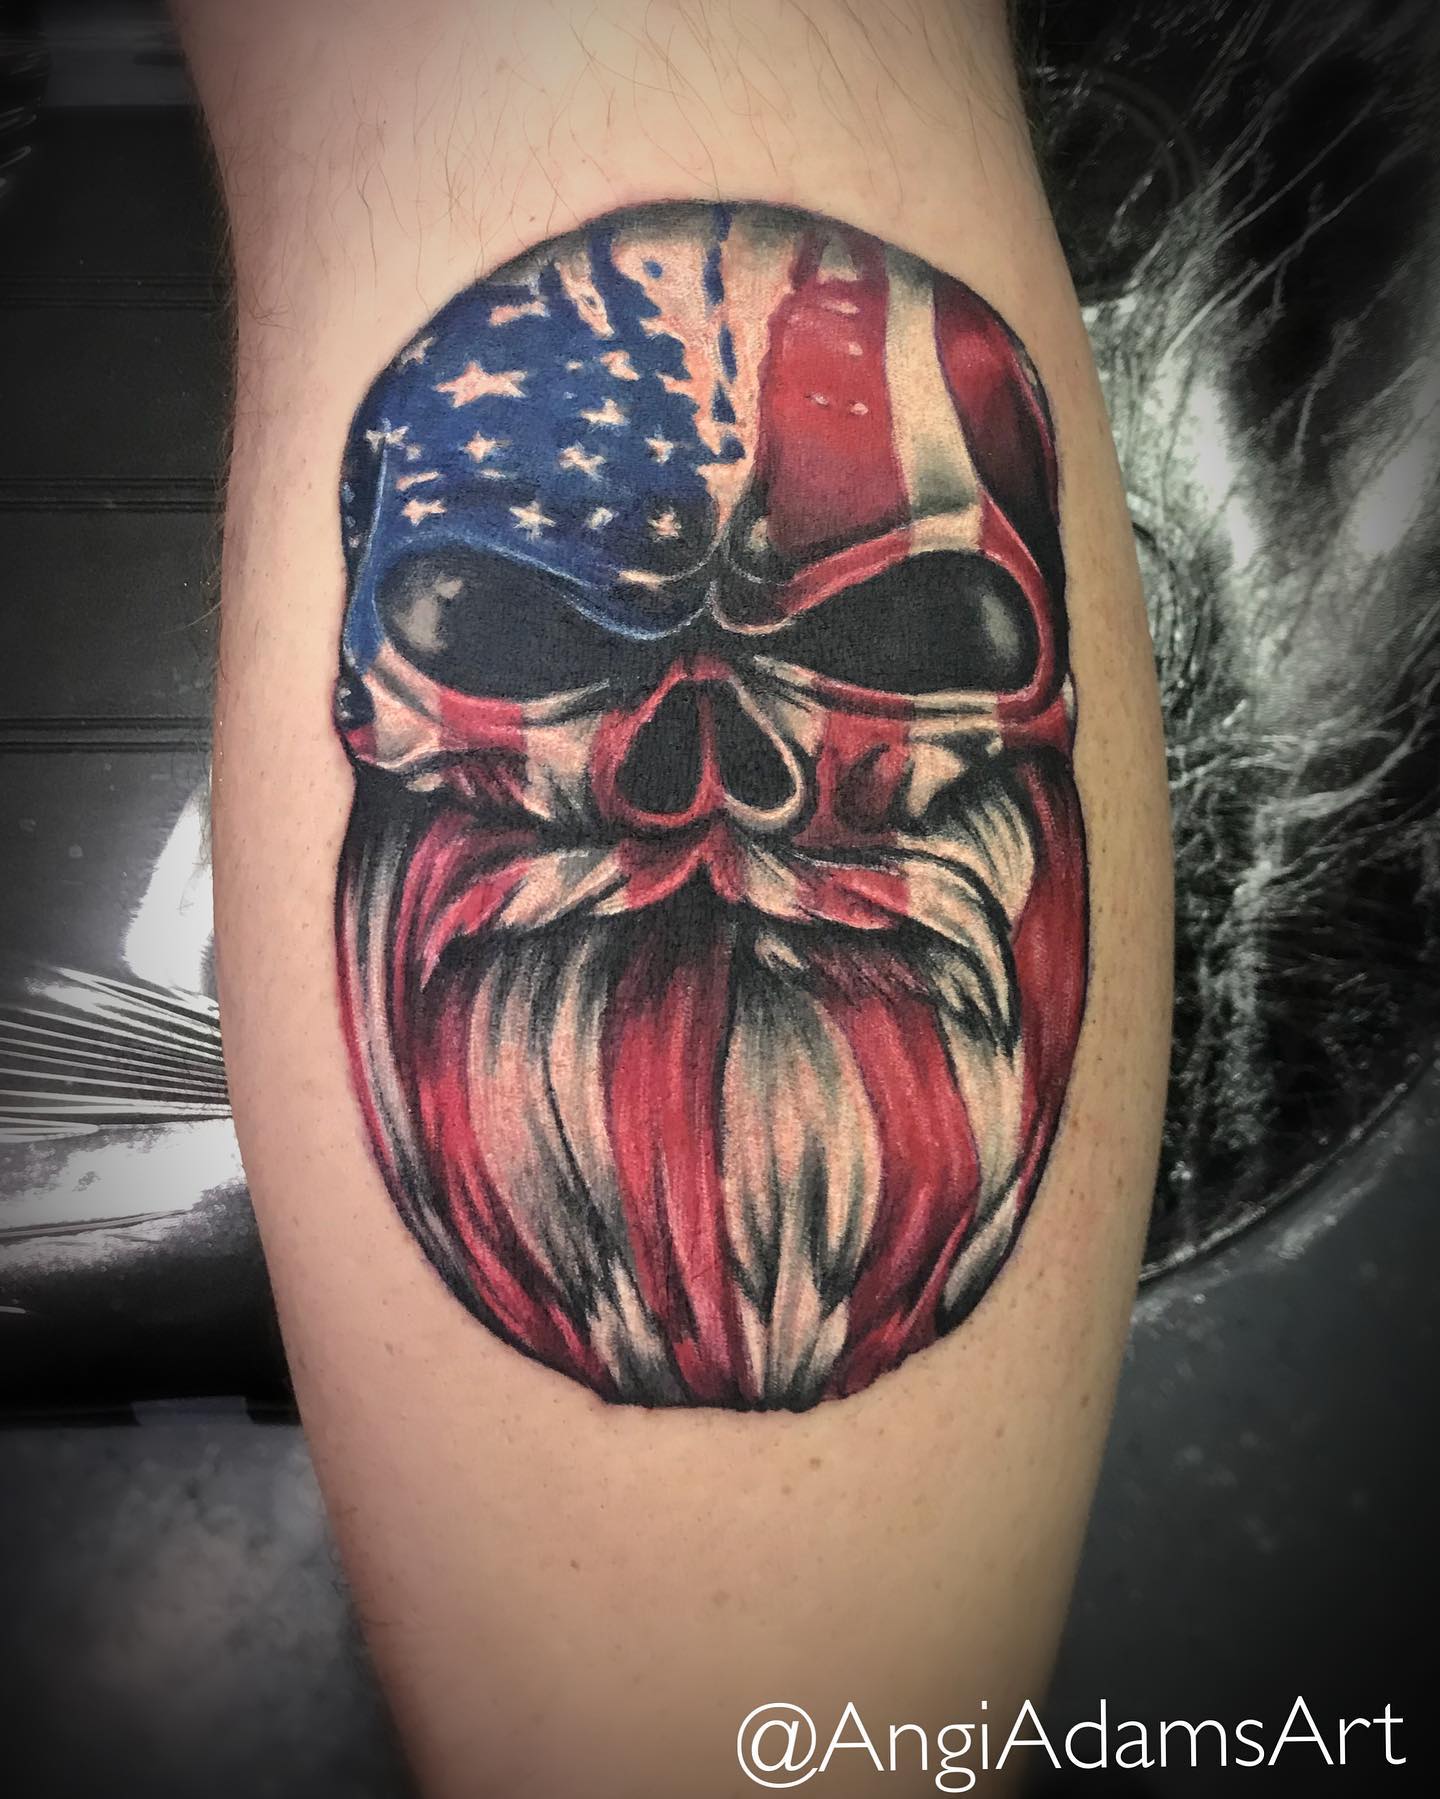 Tatuaje de calavera y bandera estadounidense en la pantorrilla.